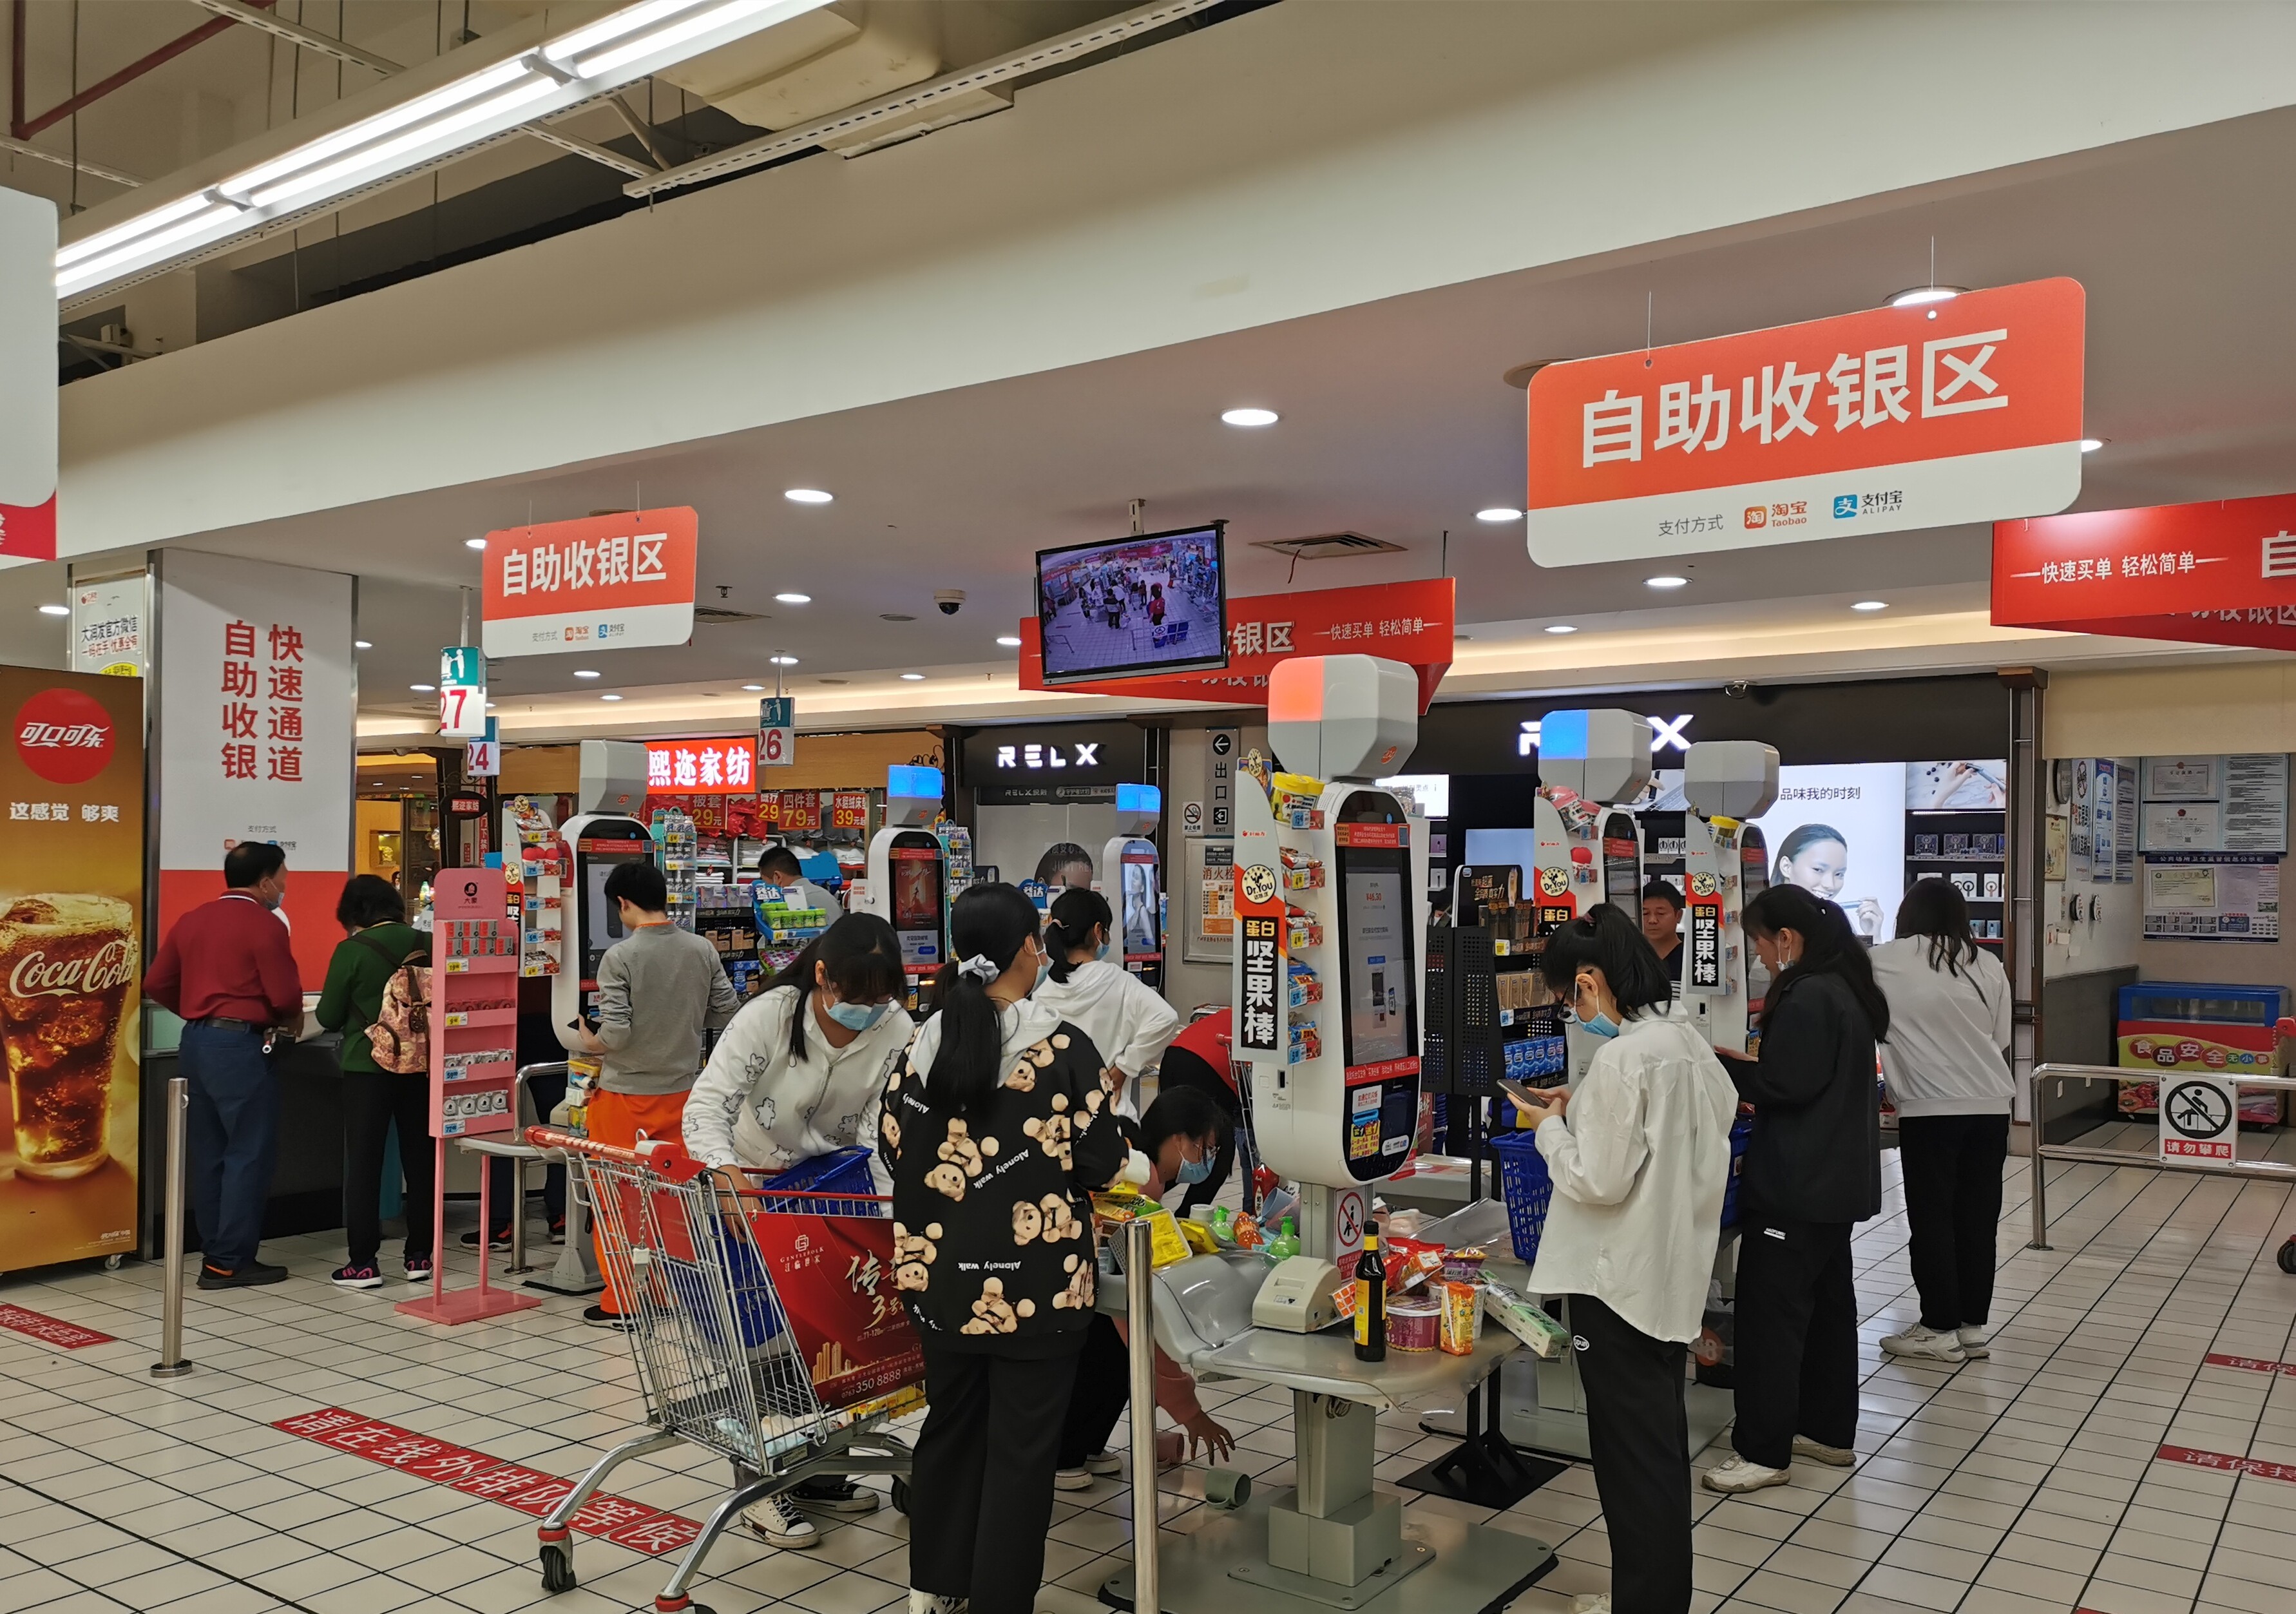 大润发超市设置自助收银区,市民正在有序购物